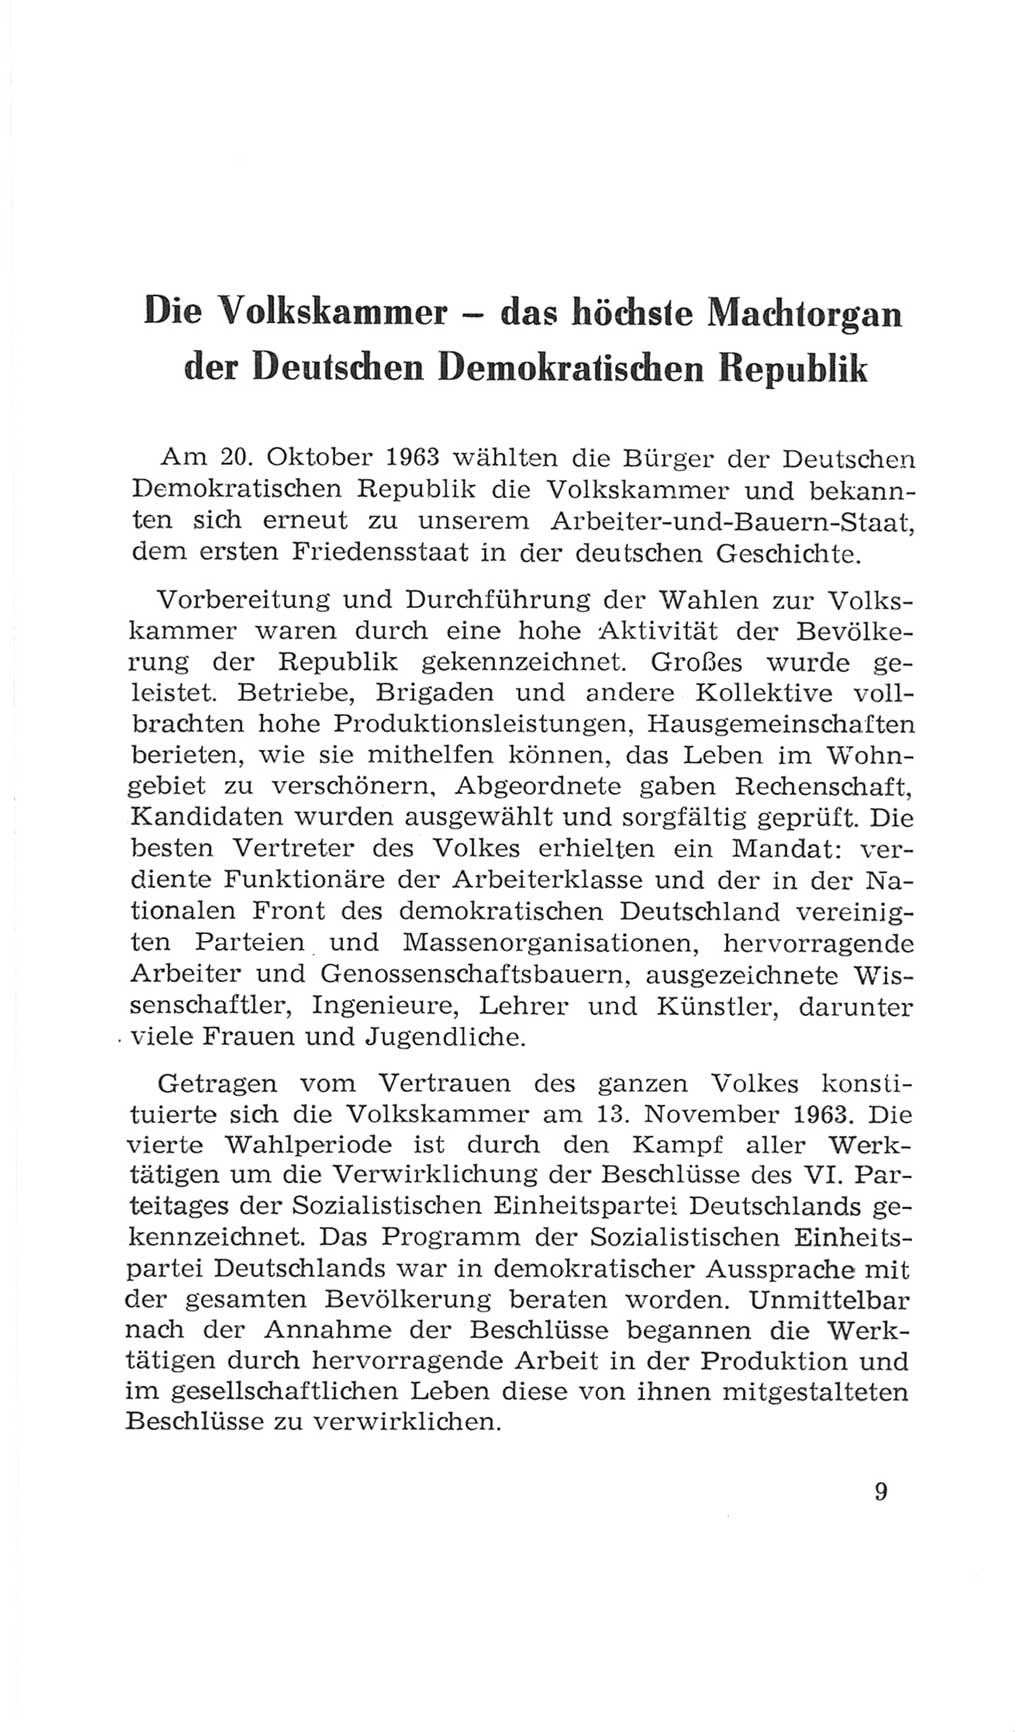 Volkskammer (VK) der Deutschen Demokratischen Republik (DDR), 4. Wahlperiode 1963-1967, Seite 9 (VK. DDR 4. WP. 1963-1967, S. 9)